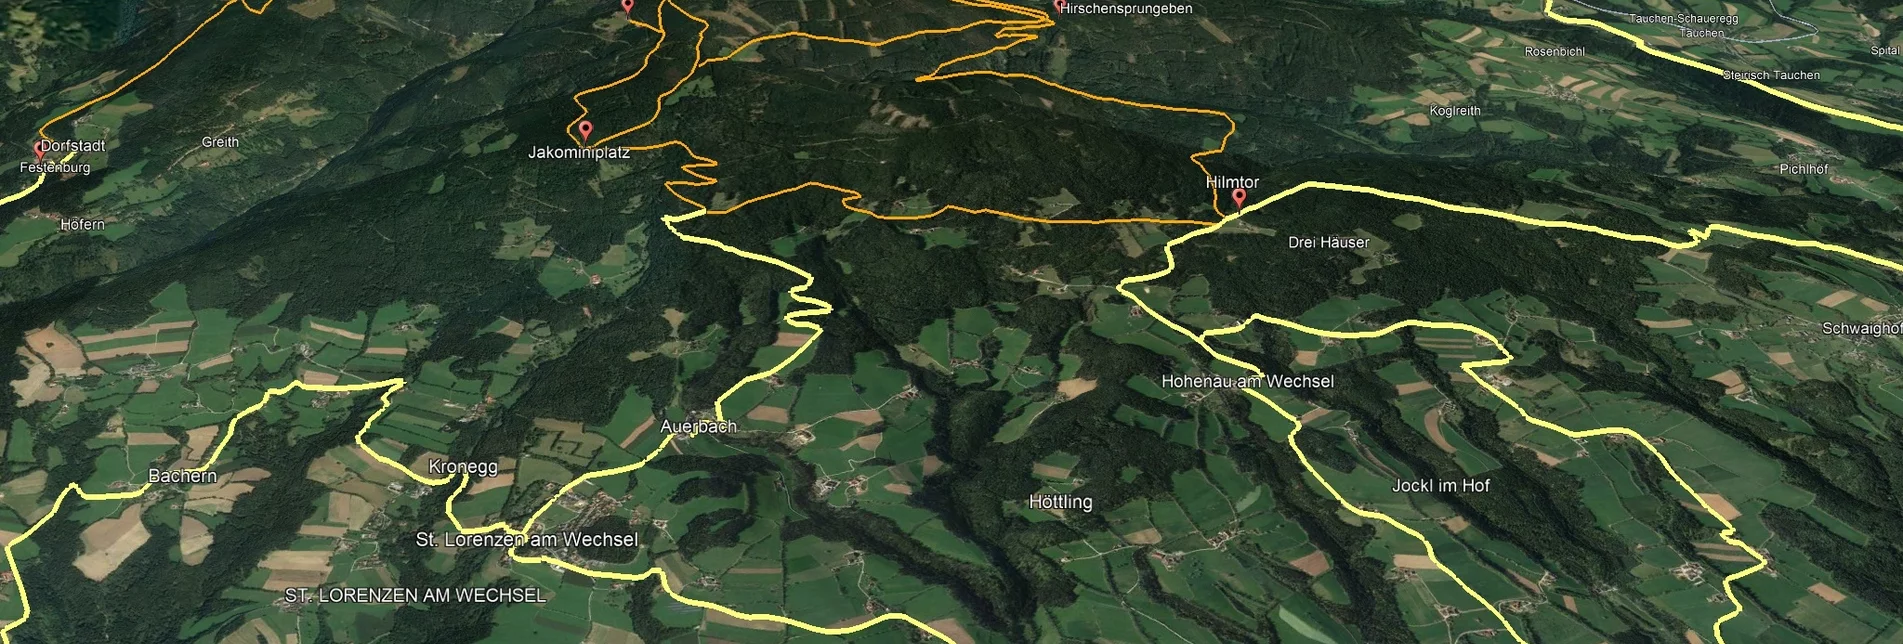 Mountainbike Steirische Wexl Trails - Zubringer Festenburg nach Dorfstatt - Touren-Impression #1 | © Verein Tourismusentwicklung Steirischer Wechsel